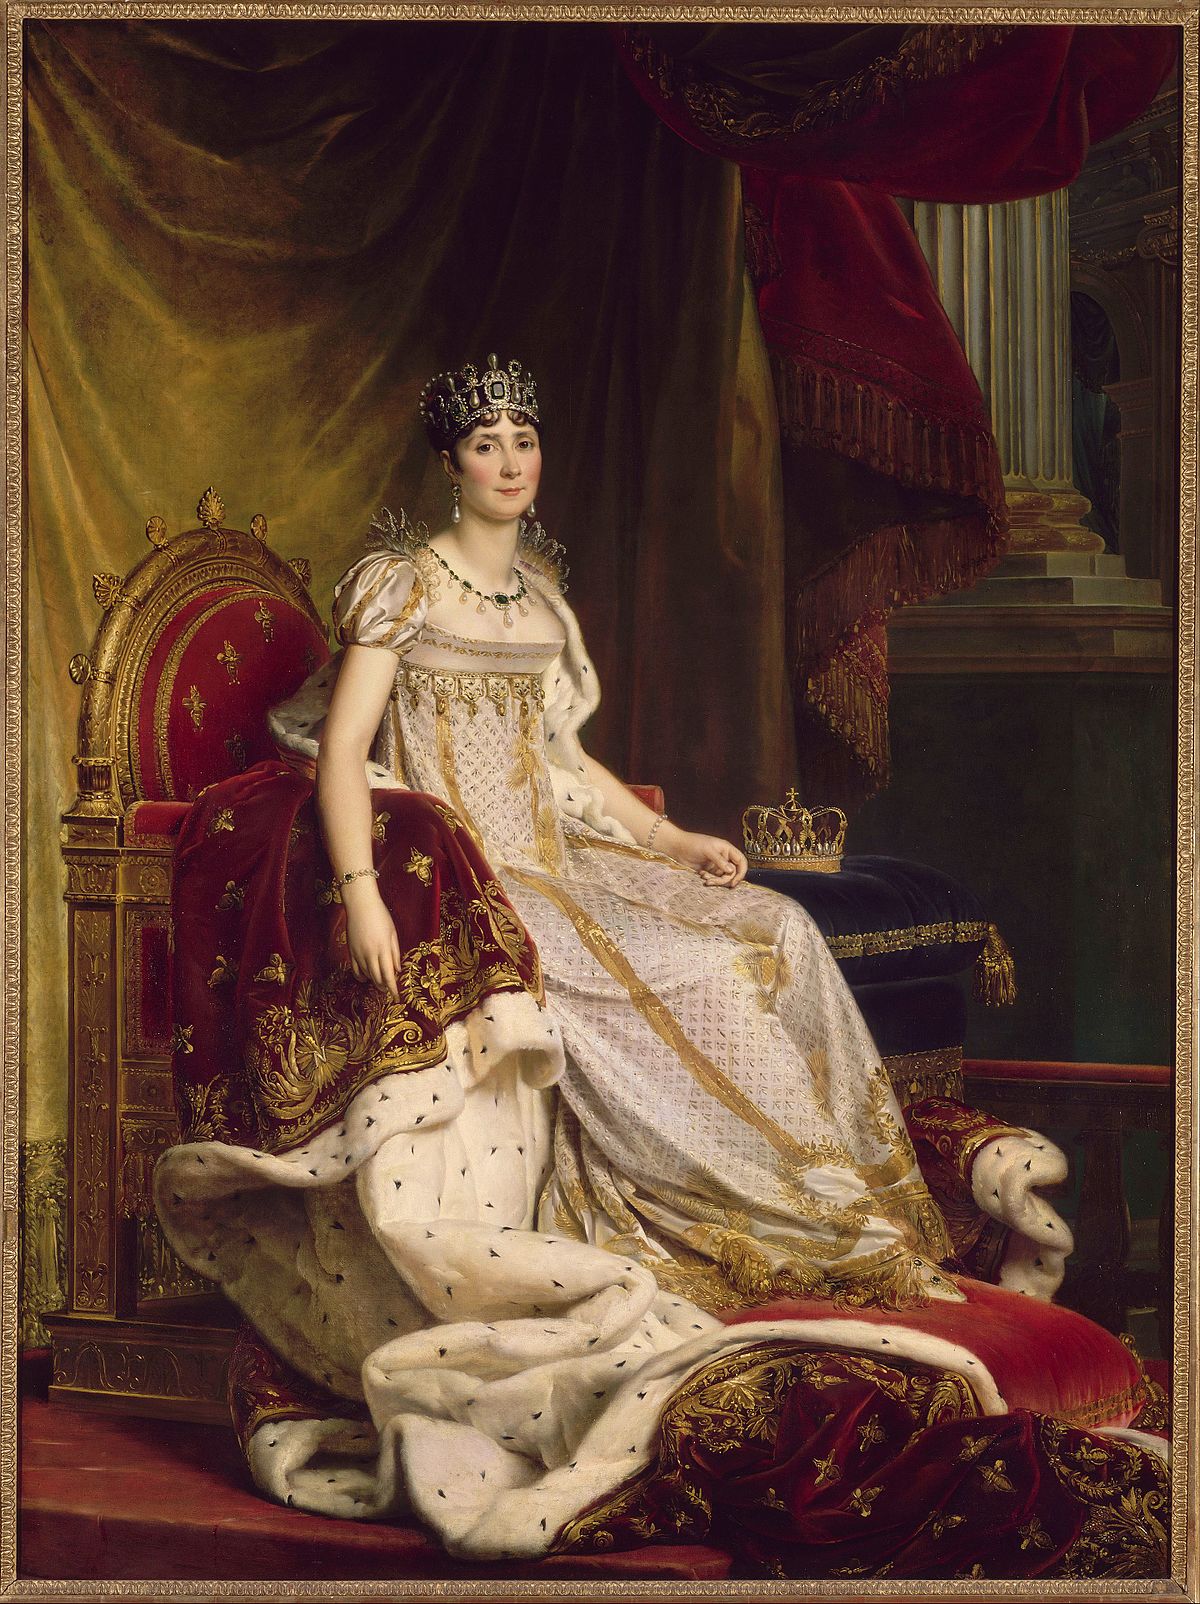 Napoleon II - Wikipedia